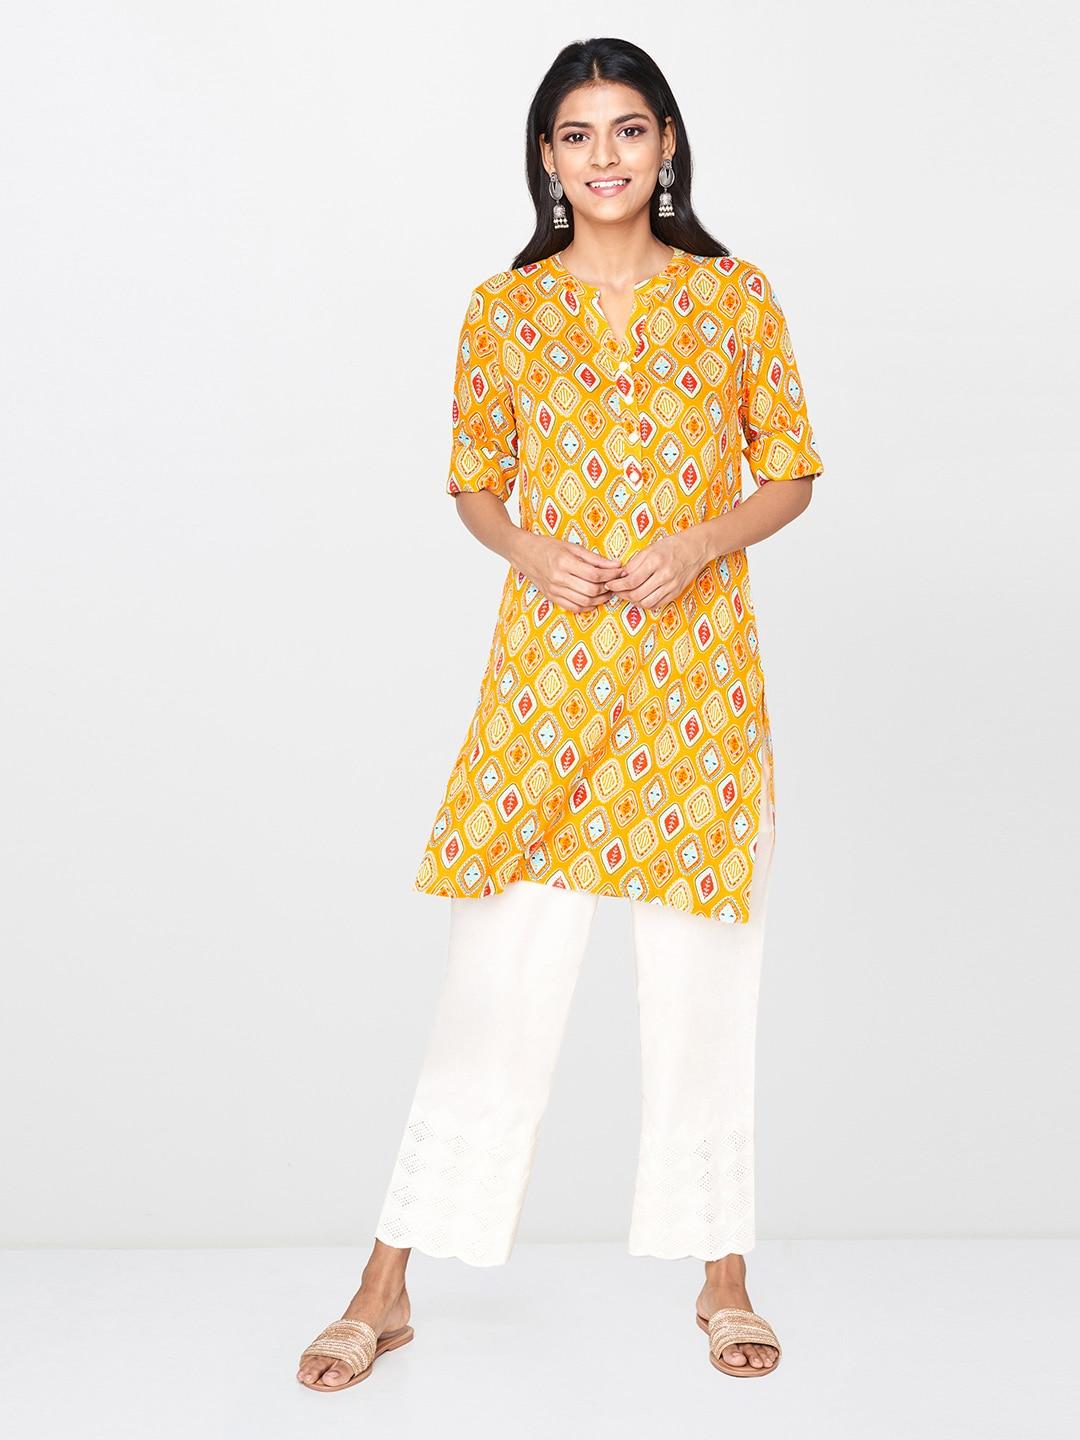 Global Desi Women's Mustard Yellow & Red Printed Tunic